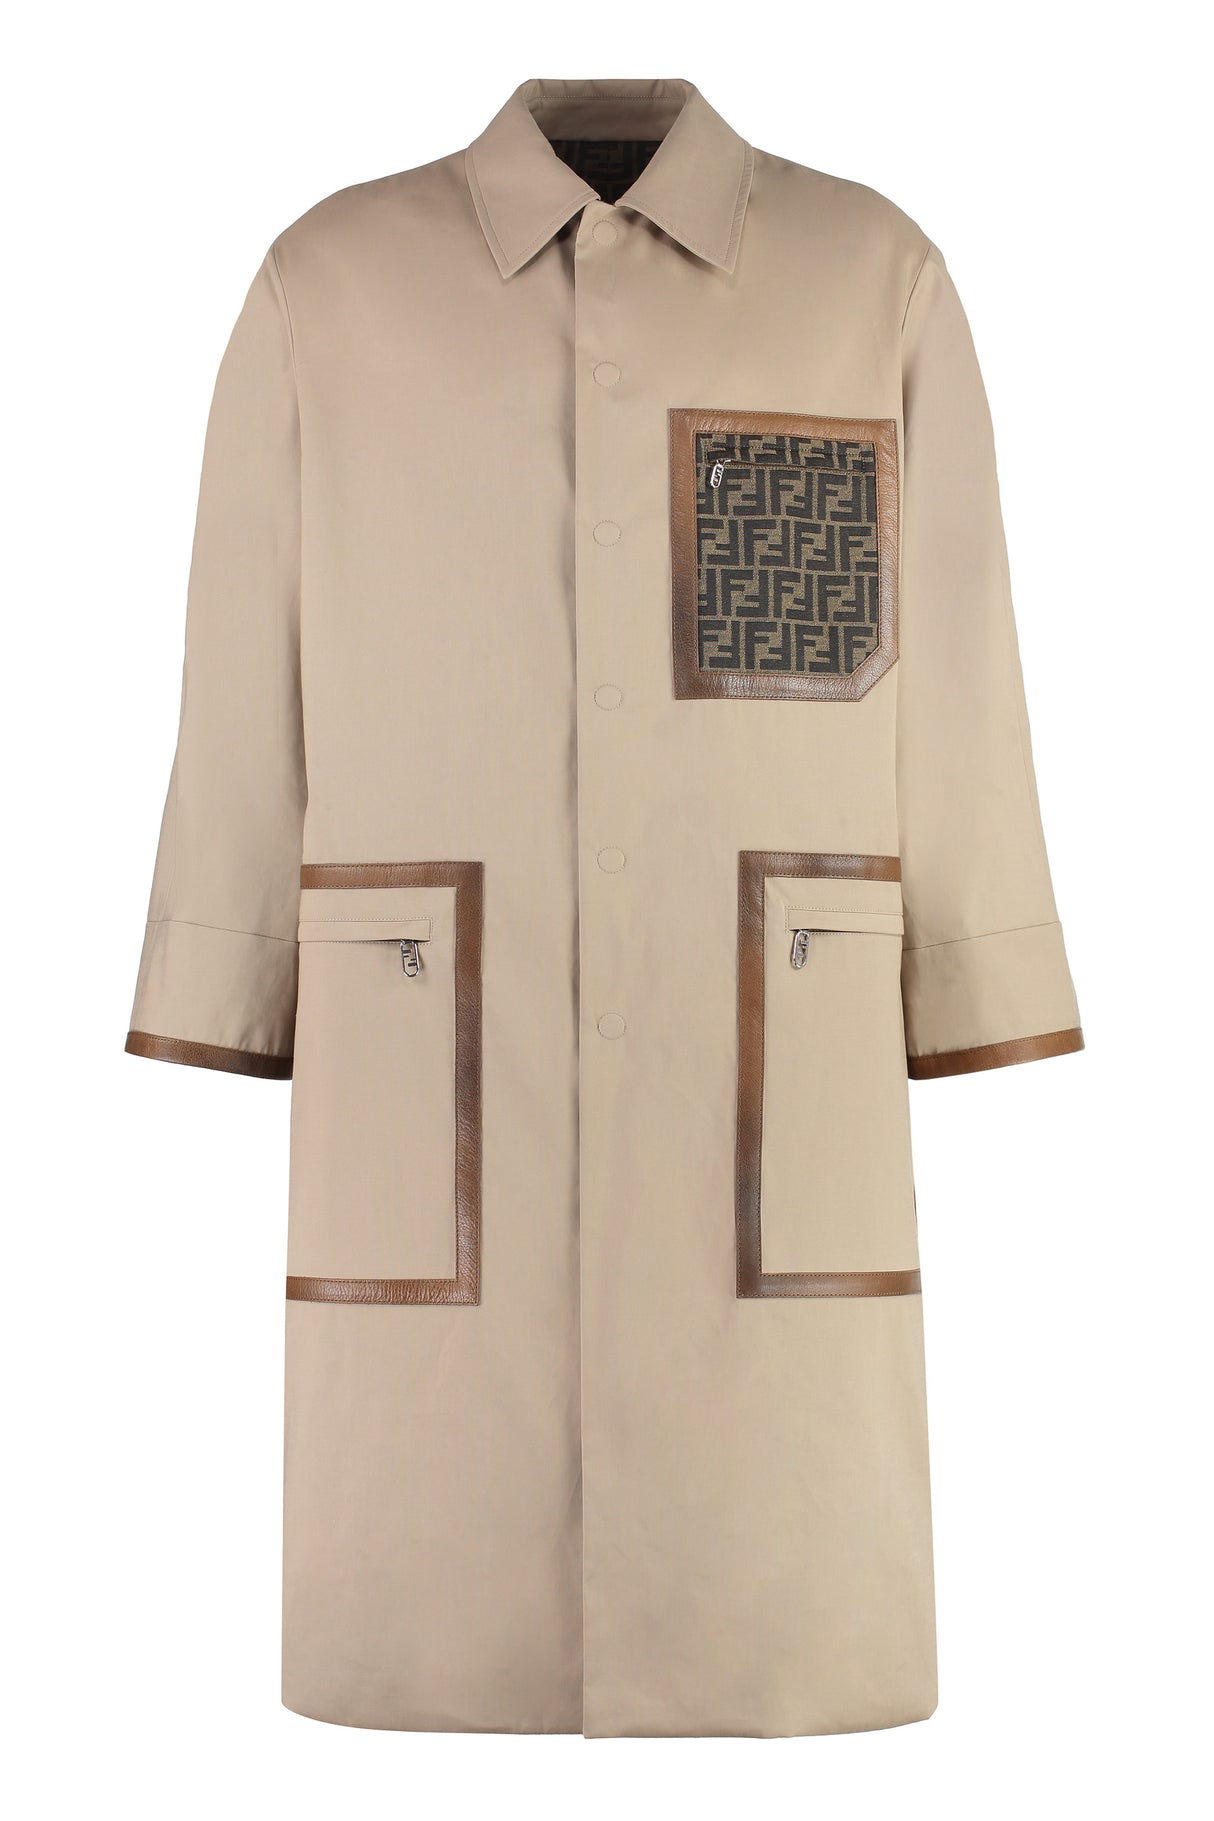 リバーシブルトレンチジャケット - メンズ用、ベージュレザーのディテイル、FFジャカード裏地、バックスリットの裾